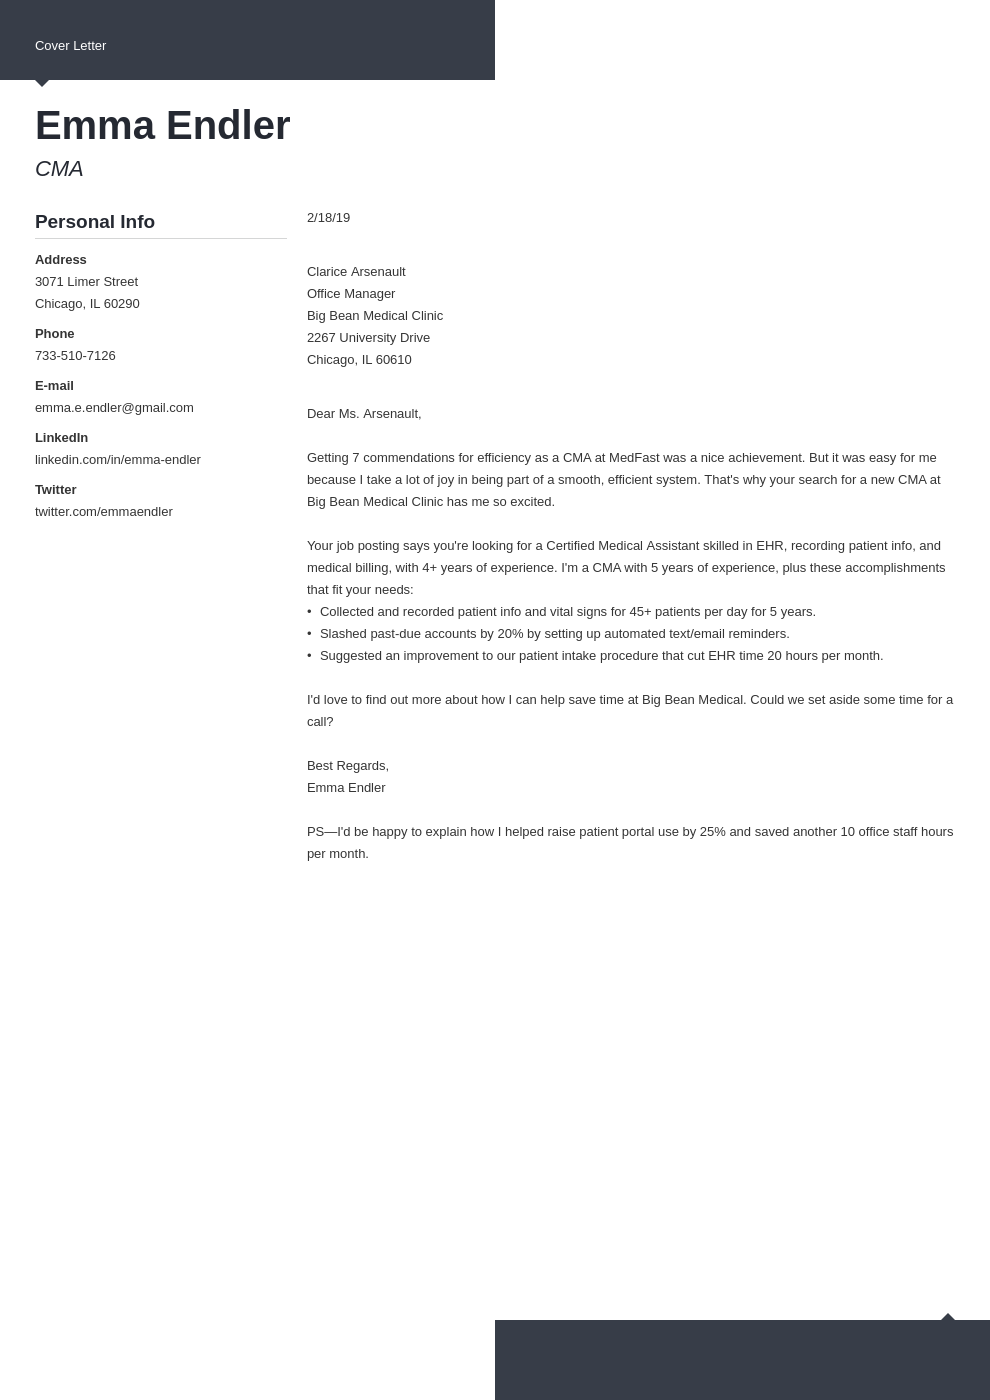 Sample short cover letter for job application